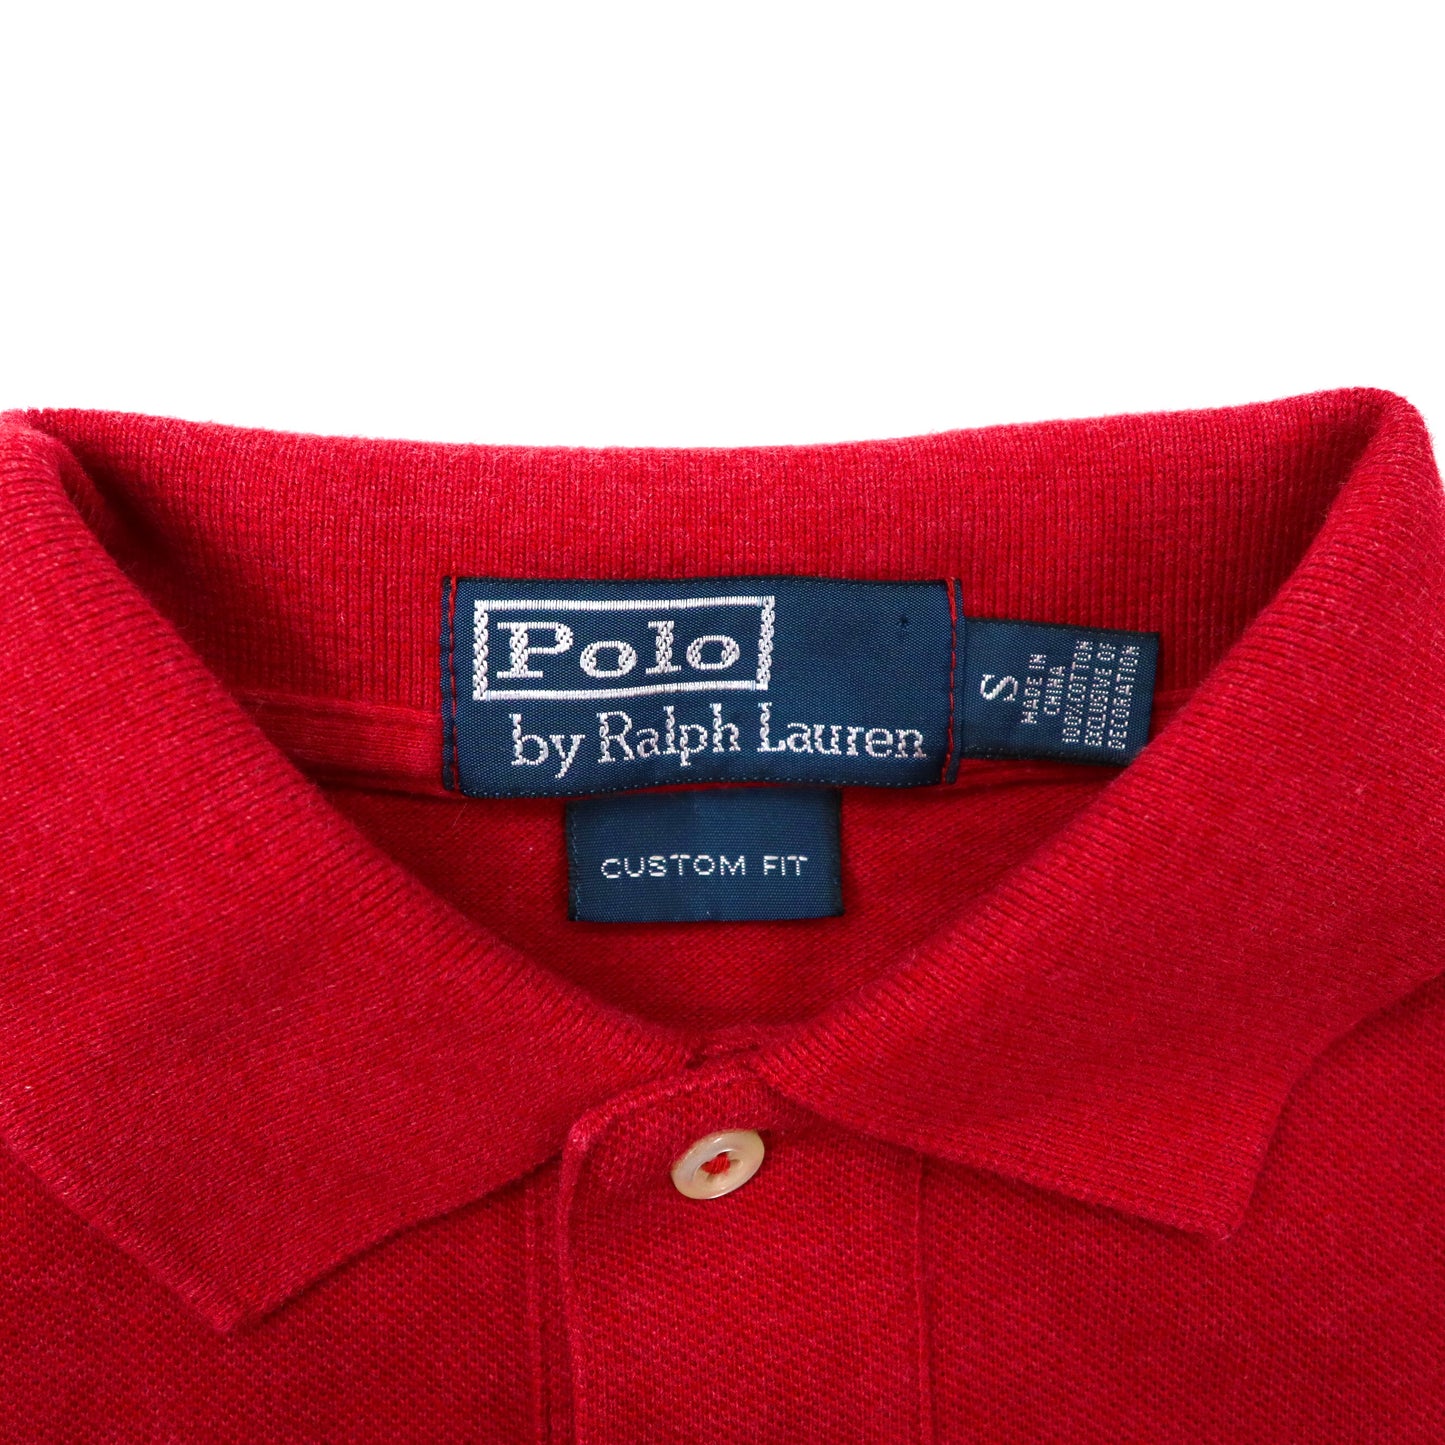 Polo by Ralph Lauren ポロシャツ S レッド コットン CUSTOM FIT スモールポニー刺繍